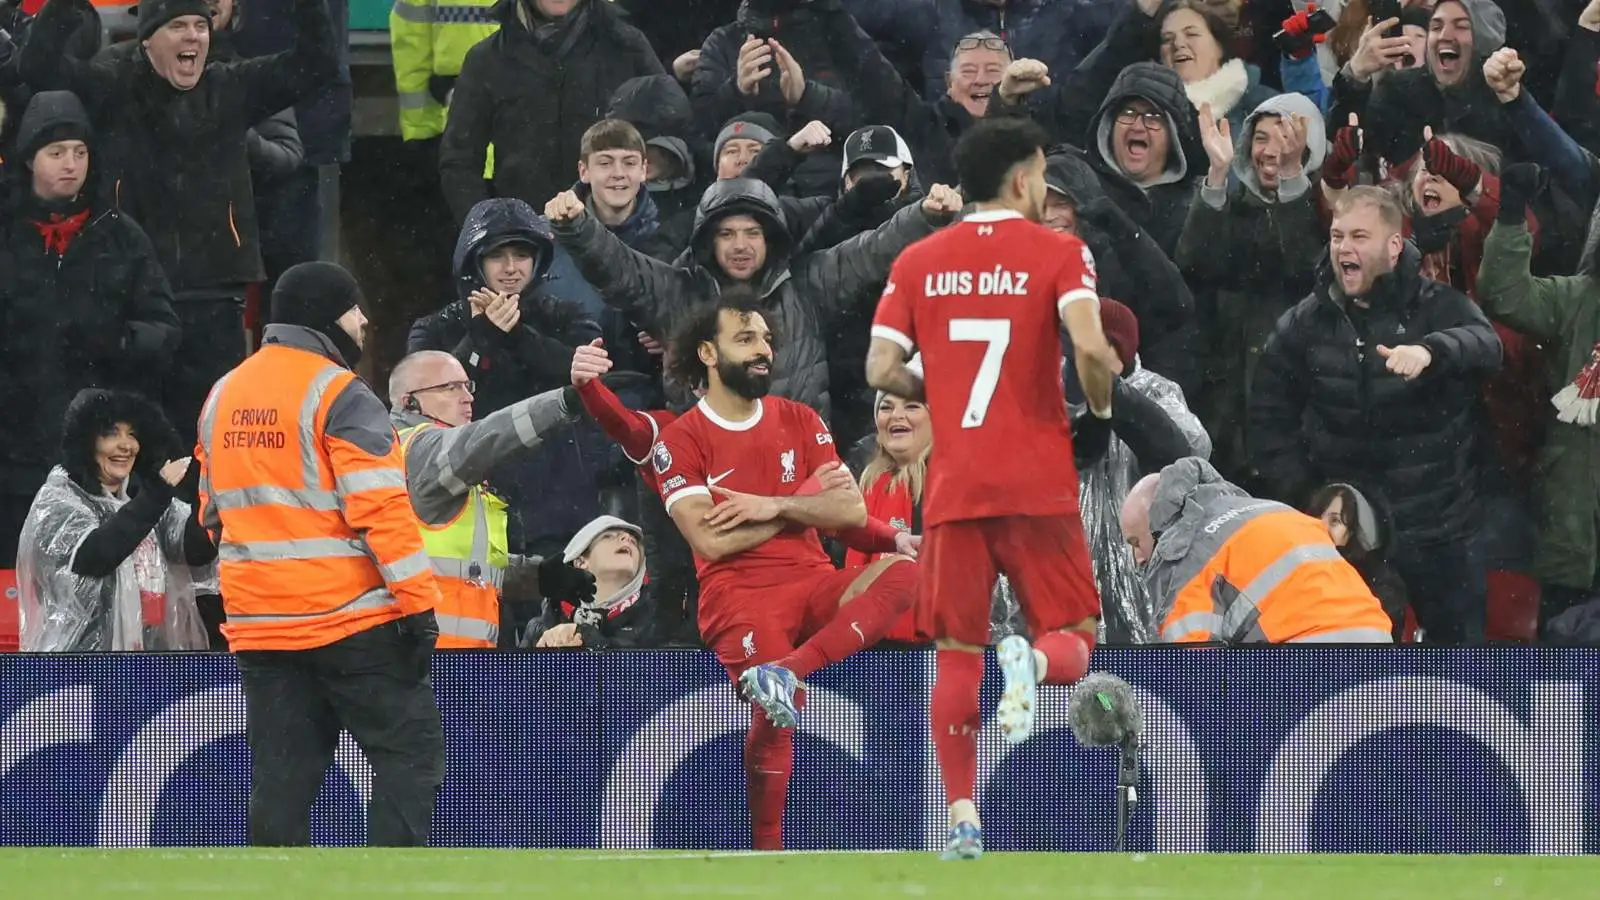 Liverpool superstar Mohamed Salah